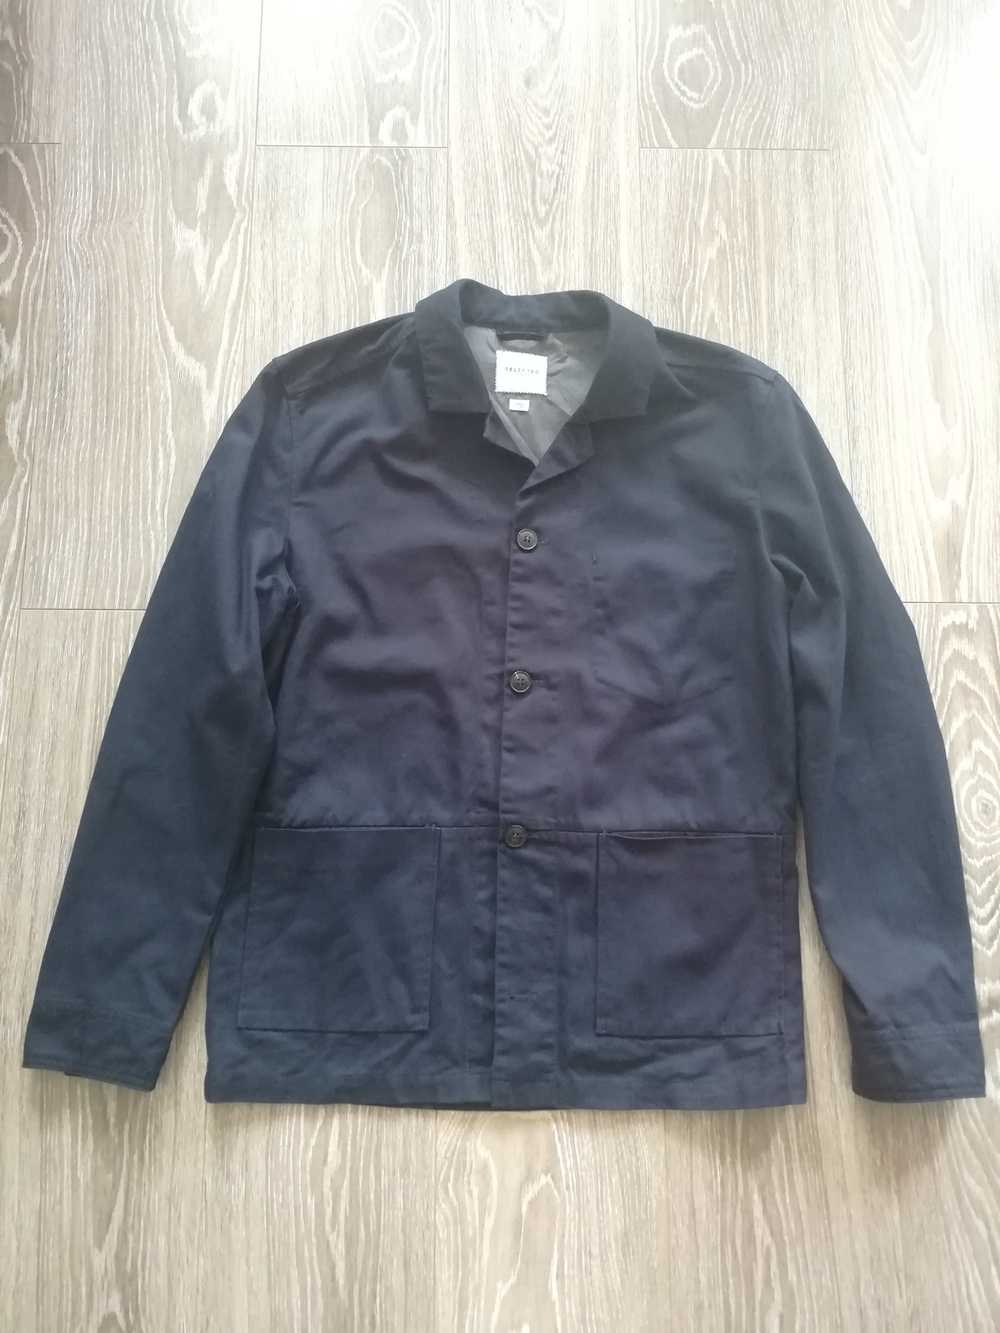 Japanese Brand × Selected Homme Workwear jacket - image 1